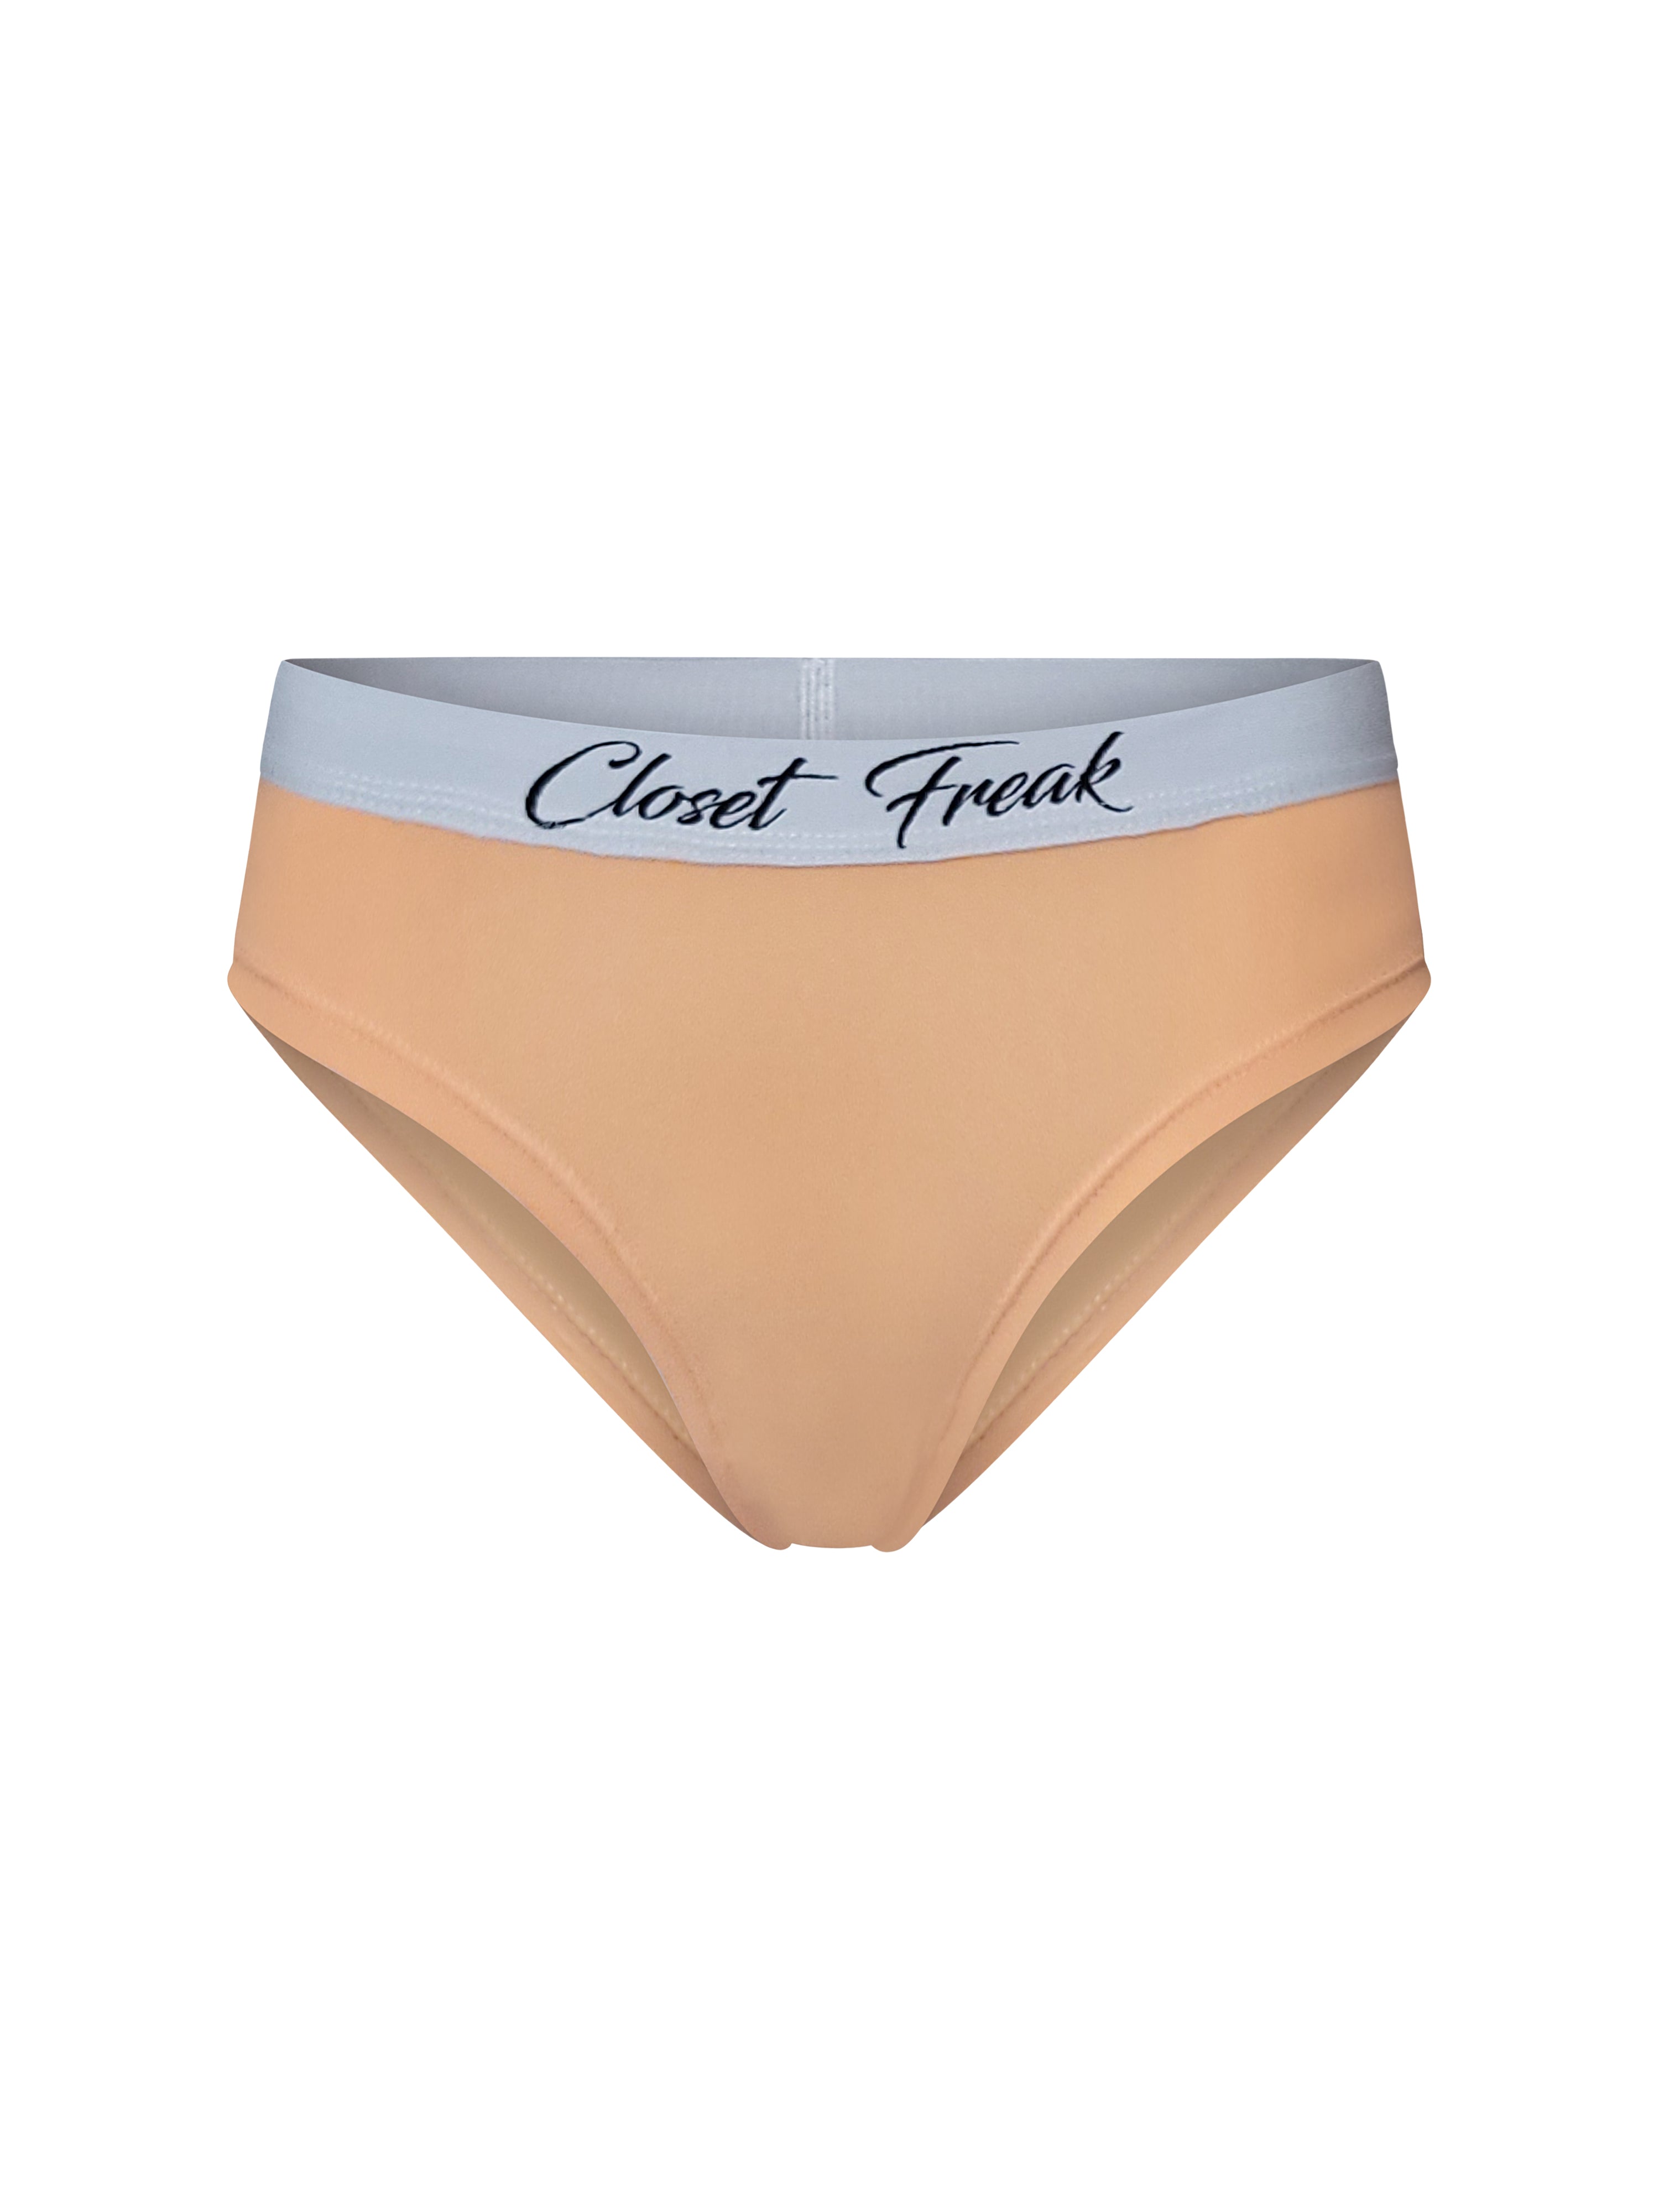 Cotton Bikini – Closet Freak Brand